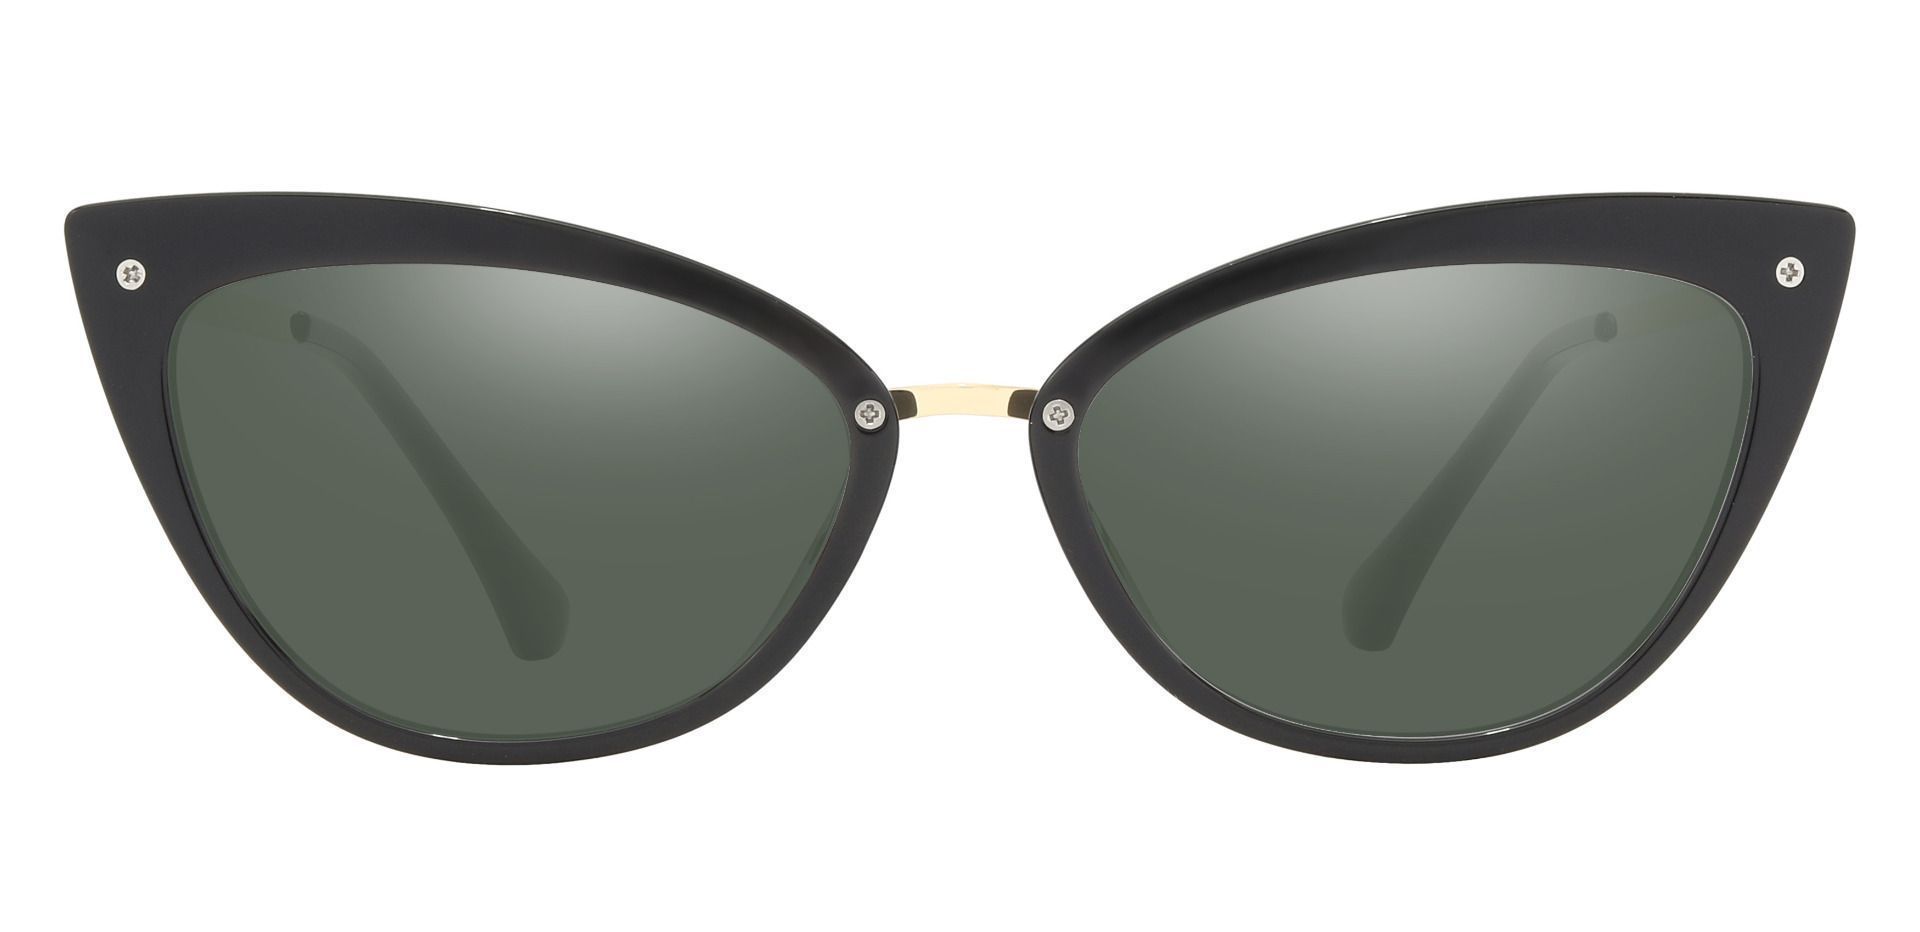 Glenda Cat Eye Prescription Sunglasses - Black Frame With Green Lenses